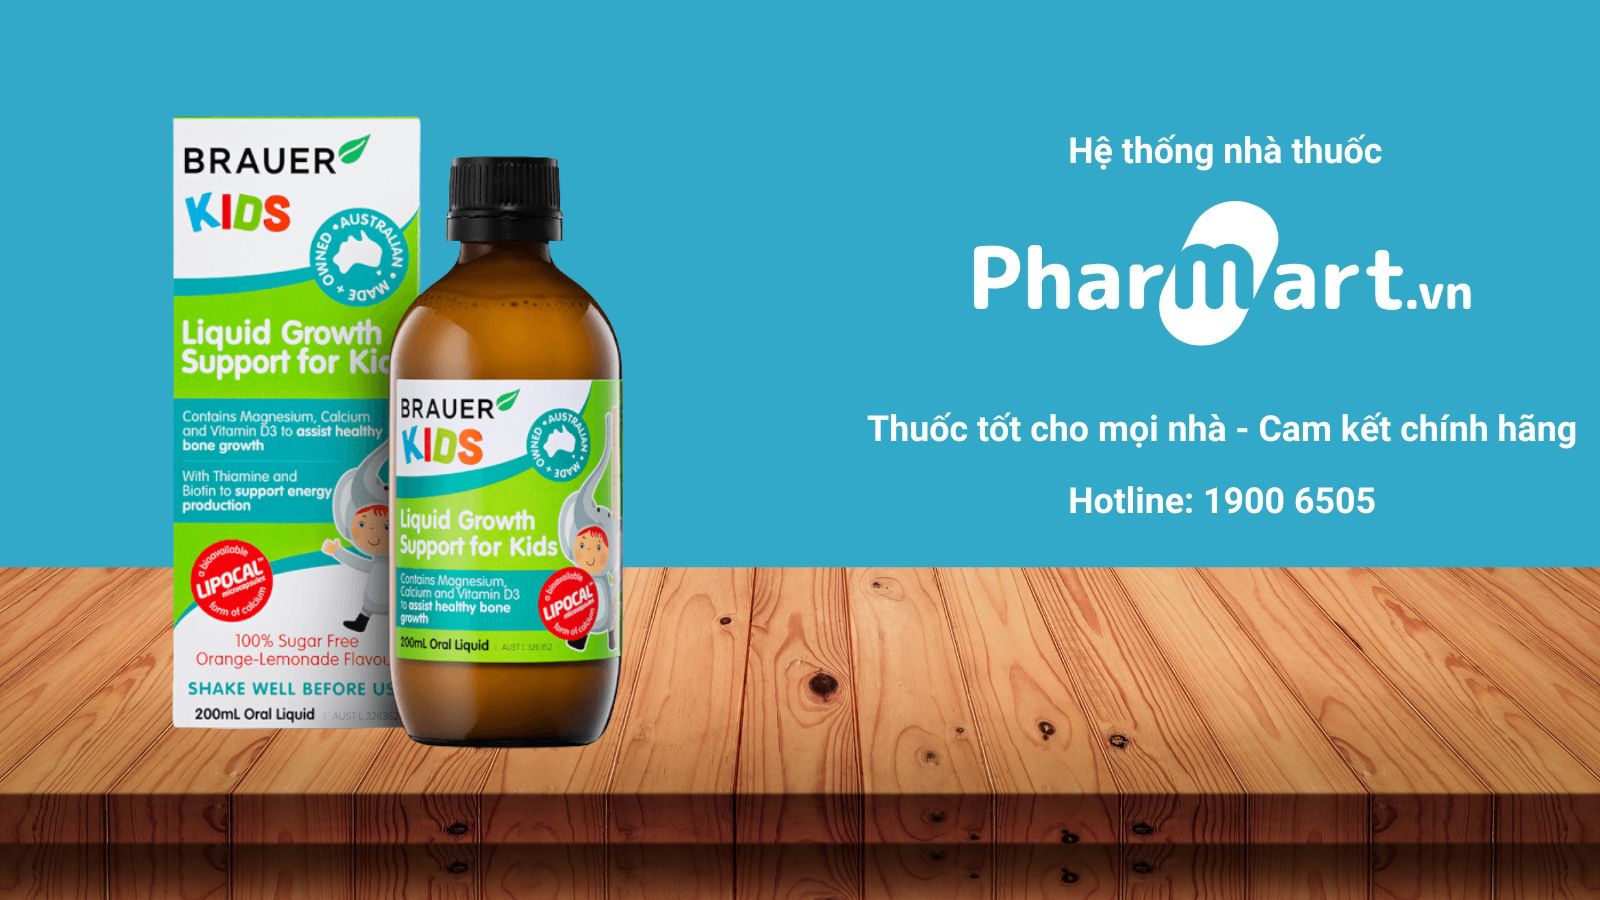 Mua Liquid Growth Support For Kids chính hãng tại Pharmart.vn